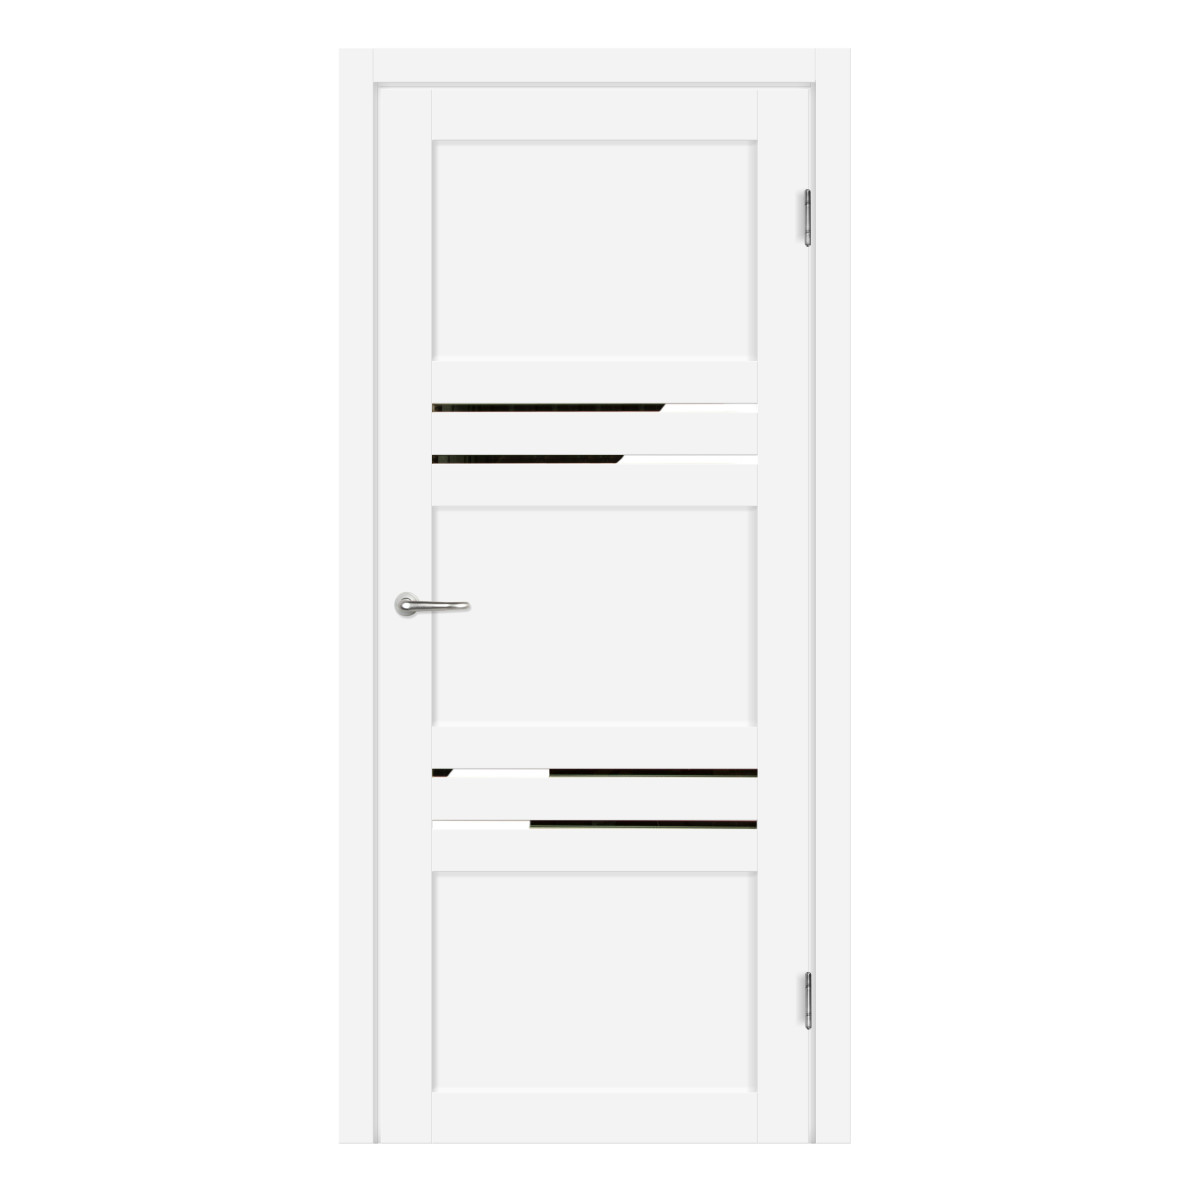 Дверь межкомнатная глухая с замком и петлями в комплекте Artens Флай 90x200 см Hardflex цвет белый